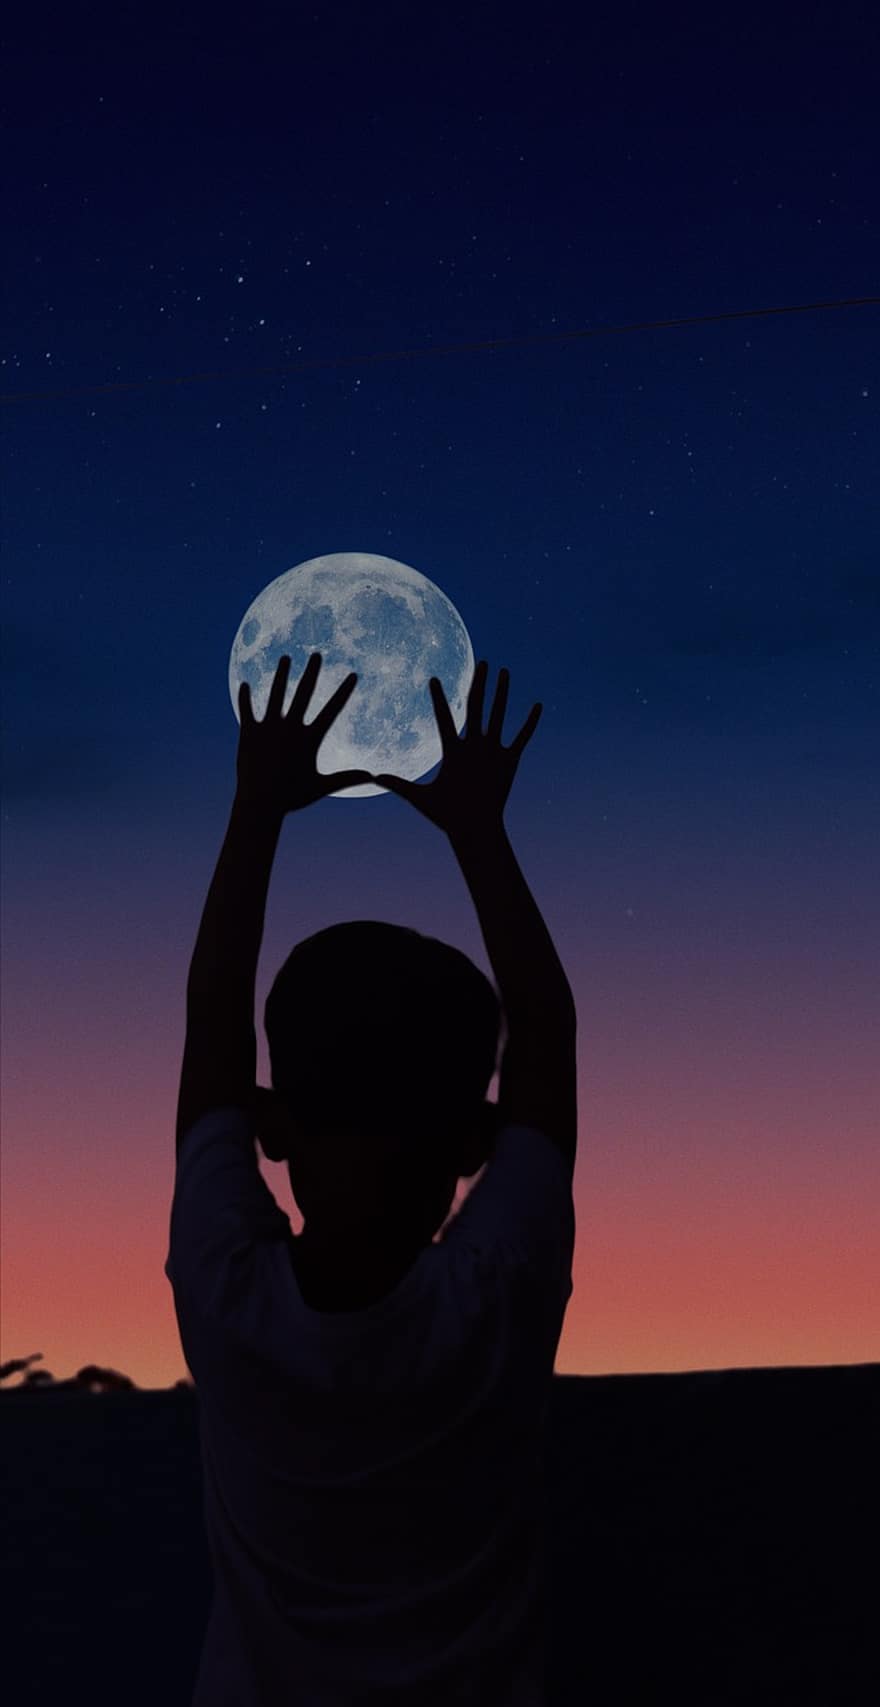 ดวงจันทร์, เด็ก, กลางคืน, มือ, Dom, ภาพเงา, พระจันทร์เต็มดวง, จับพระจันทร์, แสงจันทร์